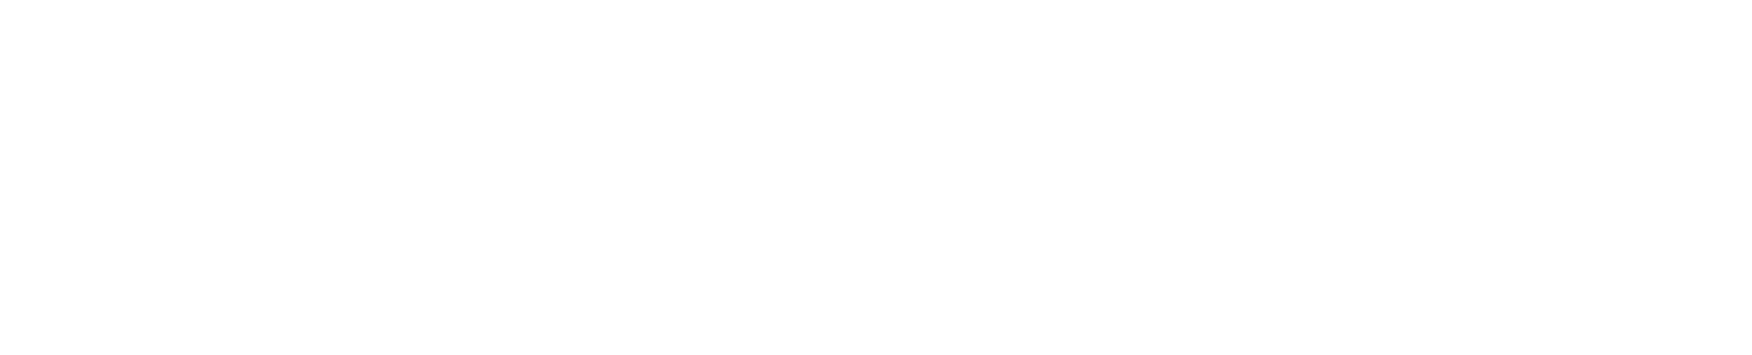 Logotipo plan recuperación, transformación y resiliencia